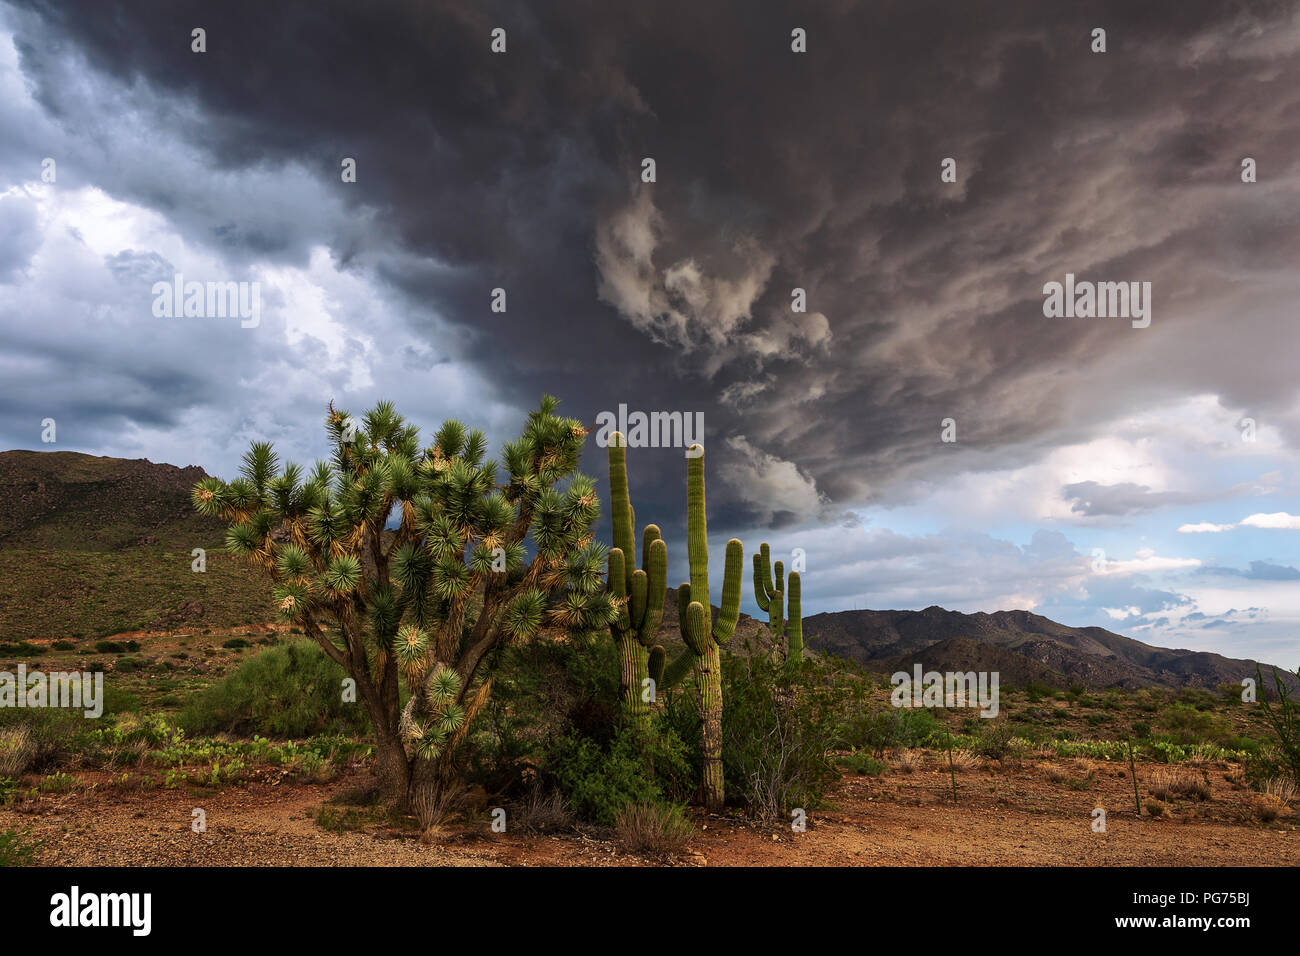 Malerische Wüstenlandschaft mit einem Joshua Tree und einem Saguaro Kaktus unter dunklen Sturmwolken in der Nähe von Congress, Arizona Stockfoto